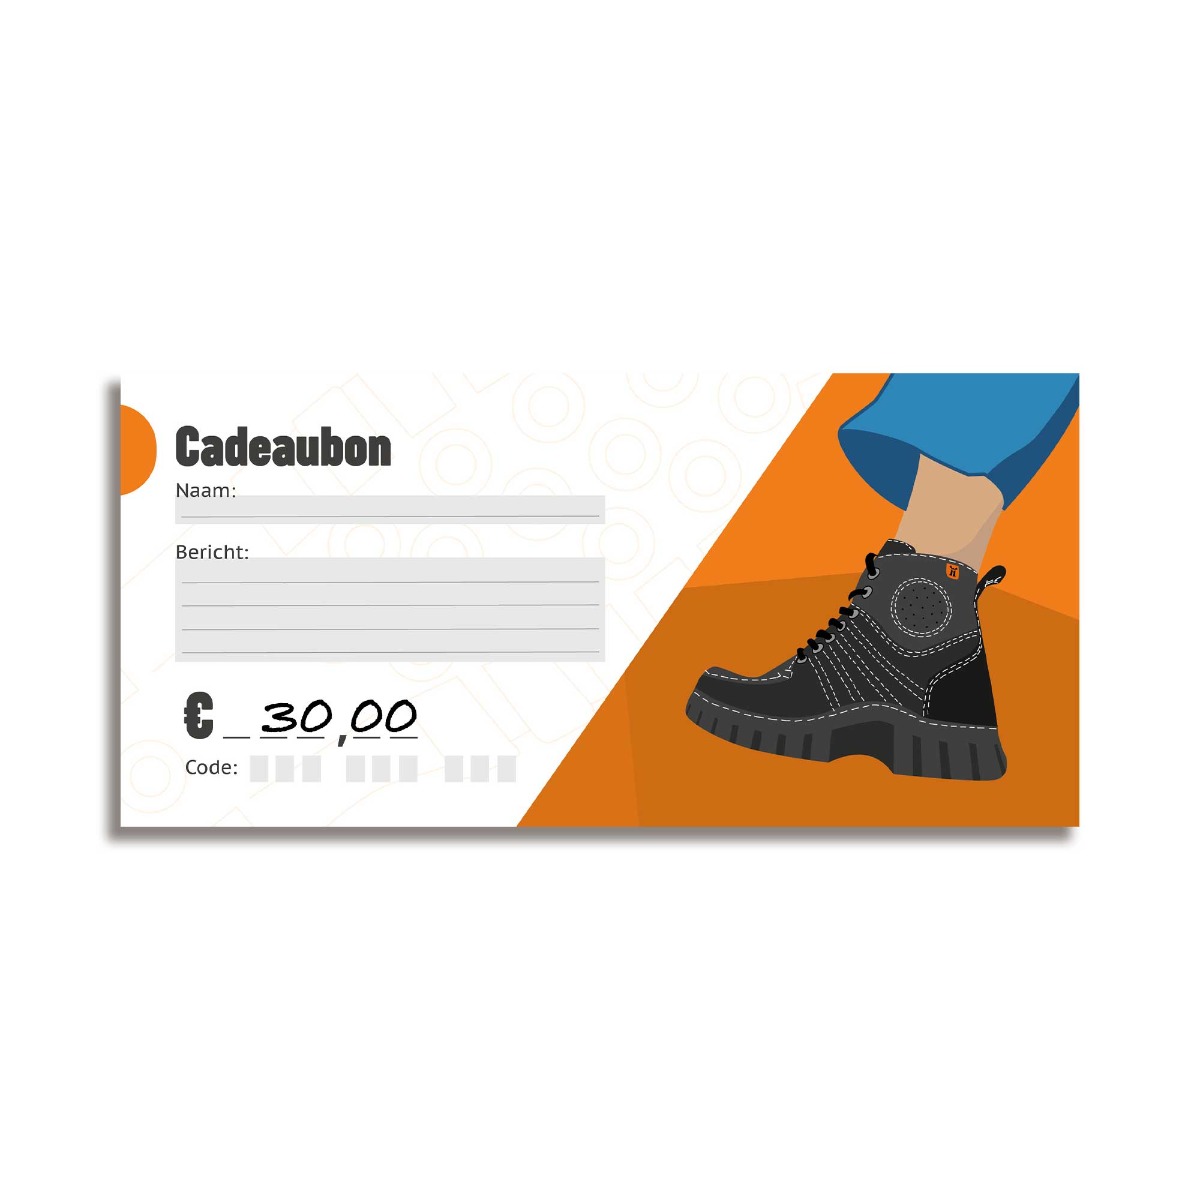 Cadeaubon / Gift-Card MAG 30